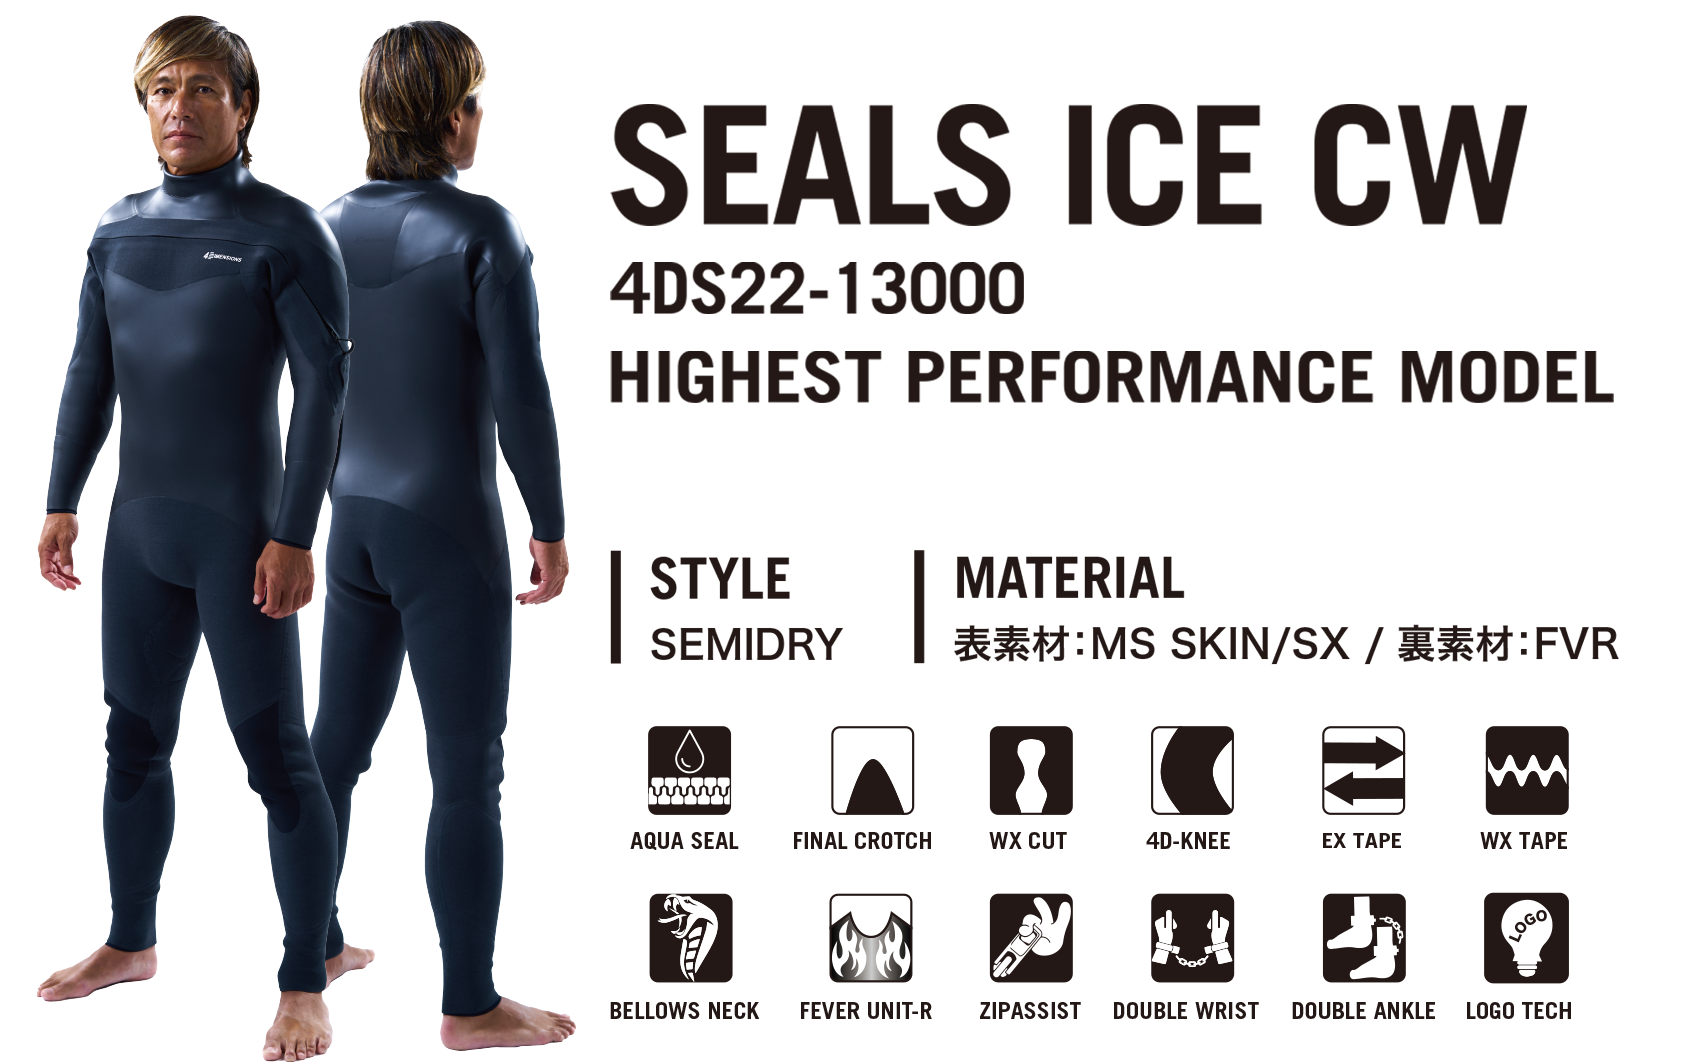 SEALS ICE CW